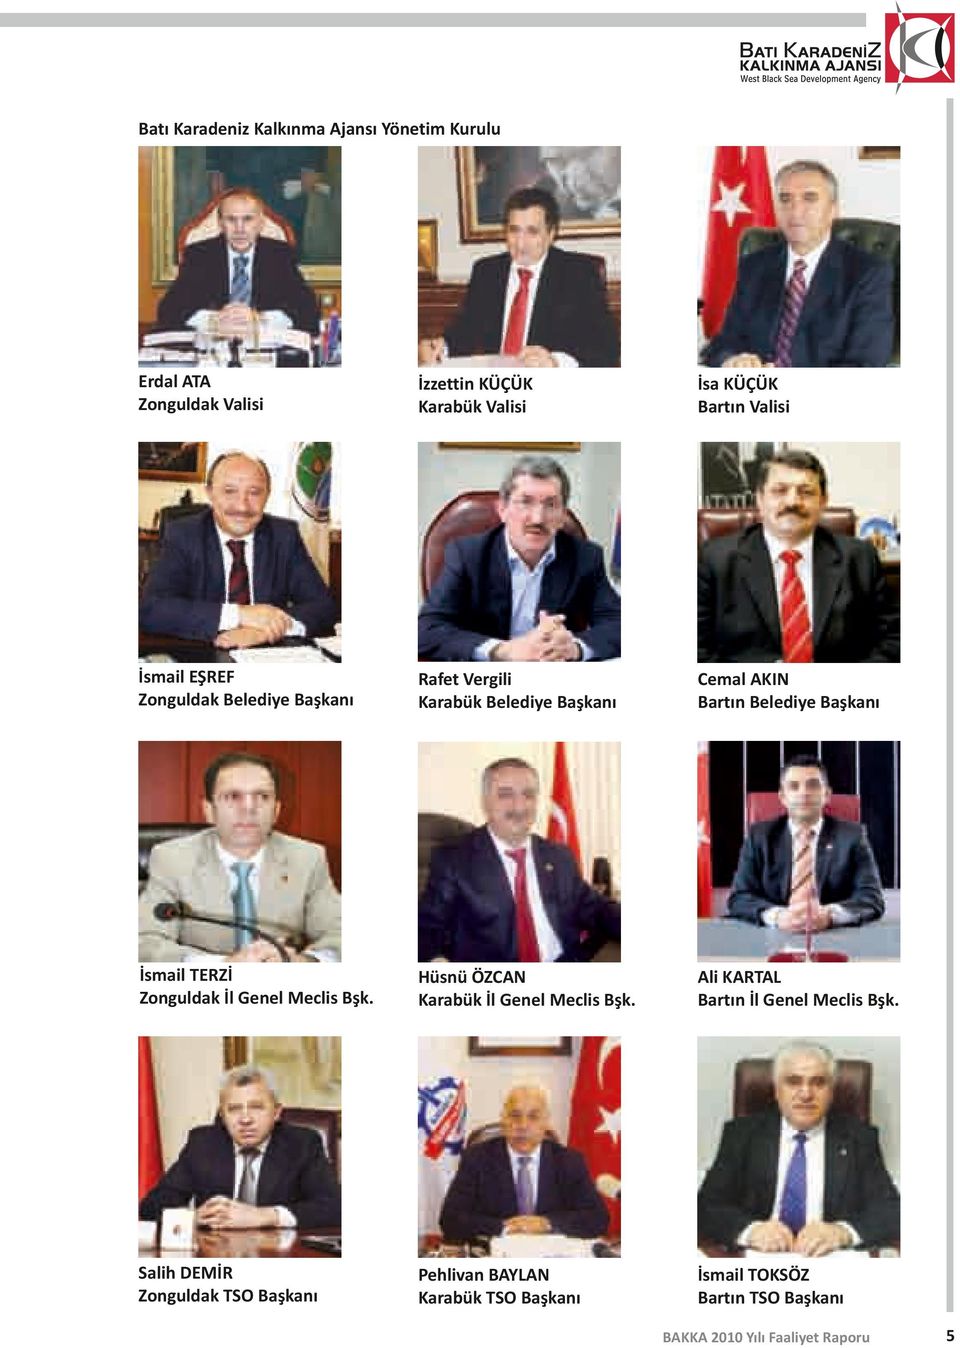 Belediye Başkanı İsmail TERZİ Zonguldak İl Genel Meclis Bşk. Hüsnü ÖZCAN Karabük İl Genel Meclis Bşk.